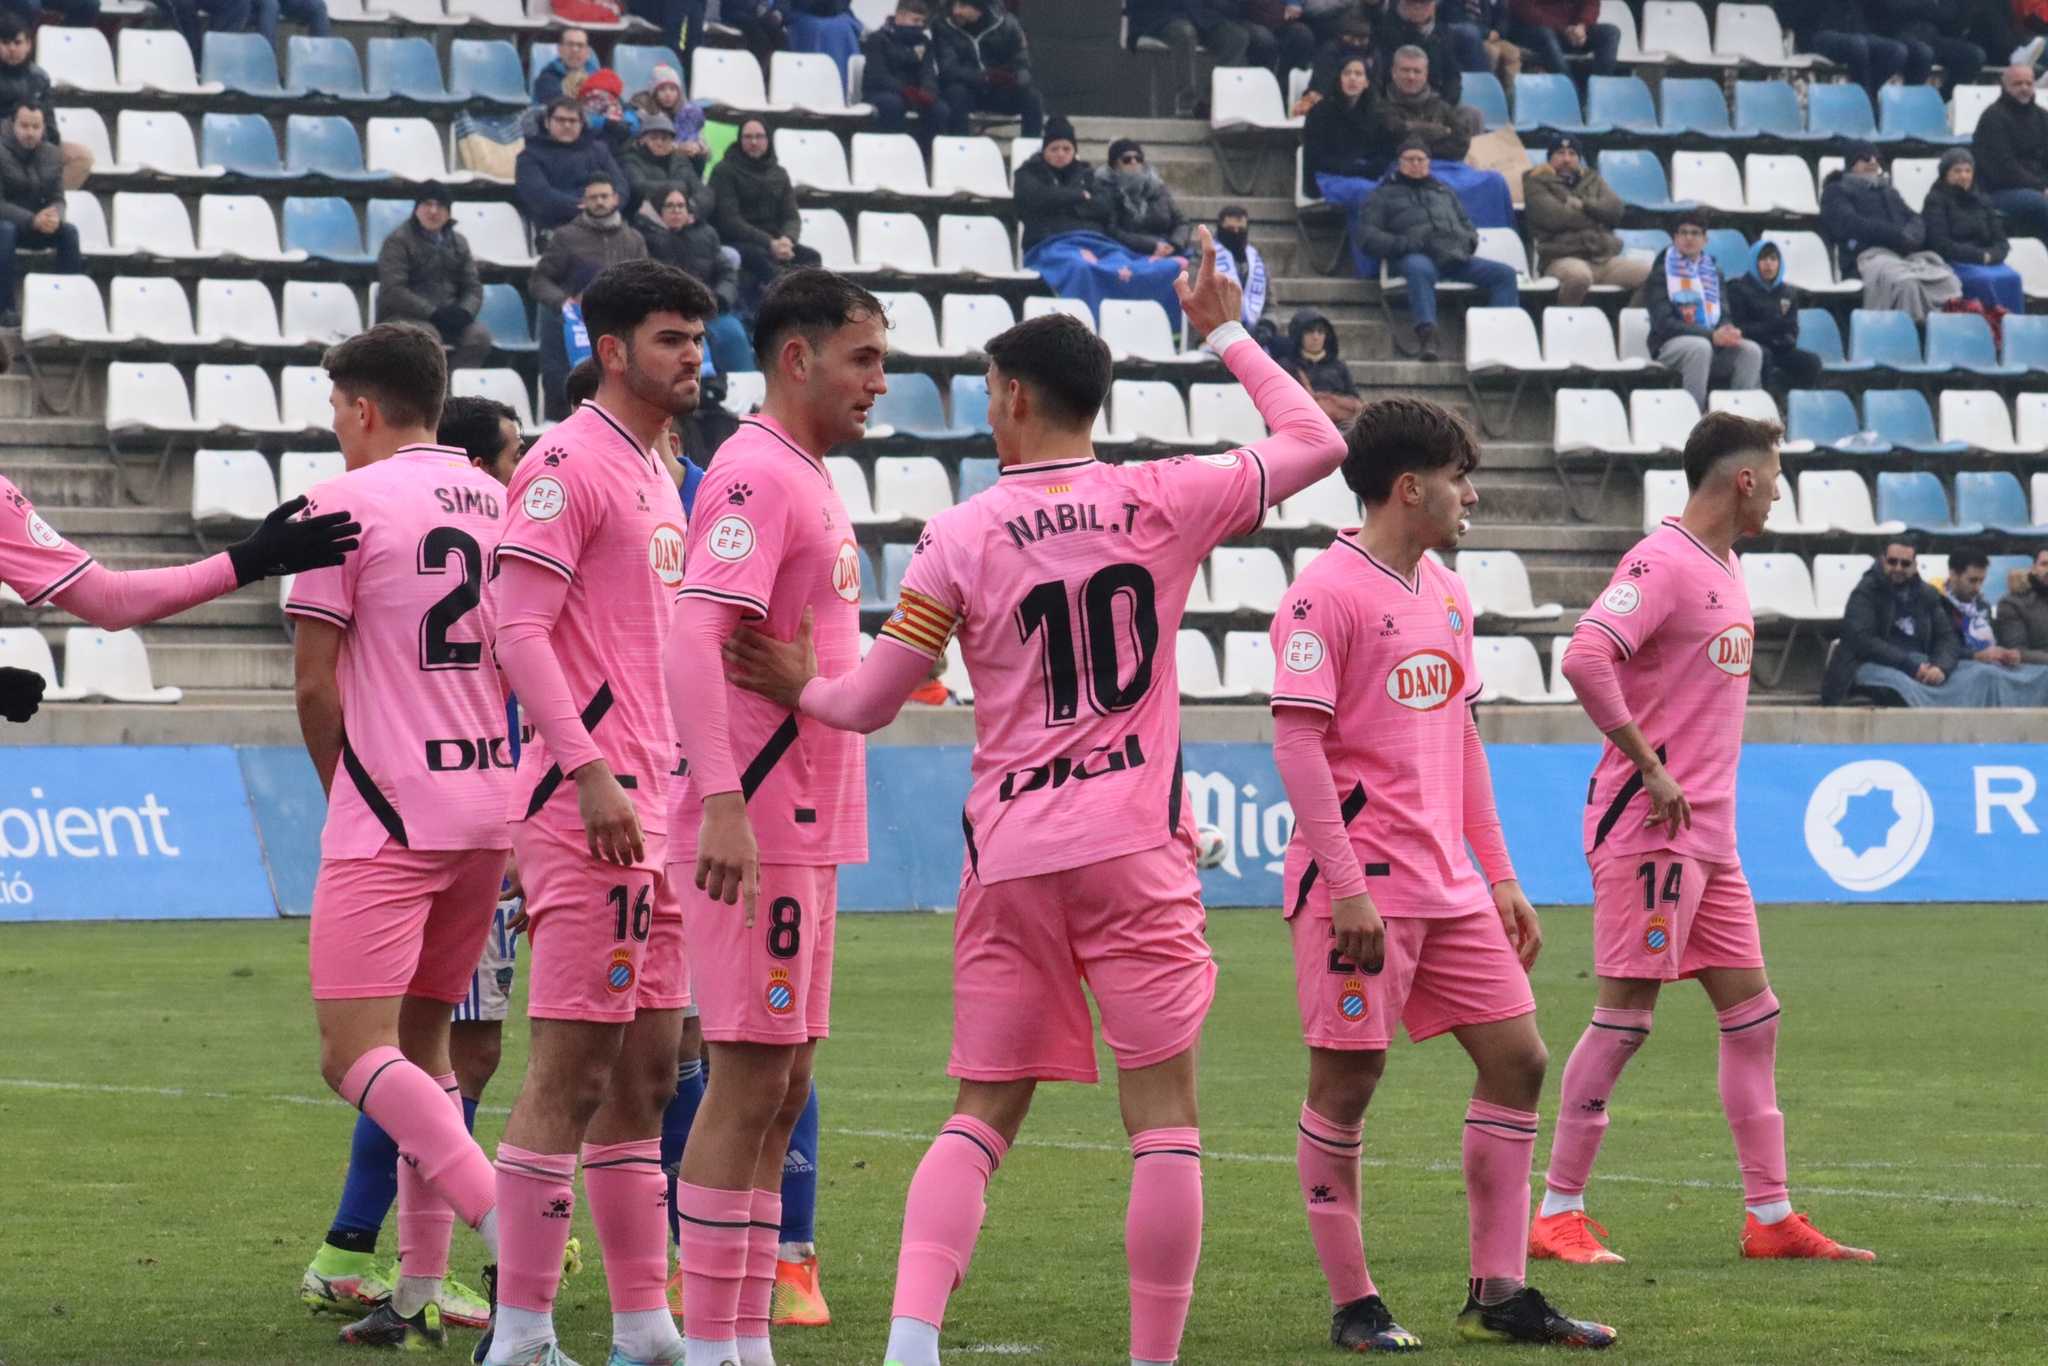 1-1: Deserved point in Lleida